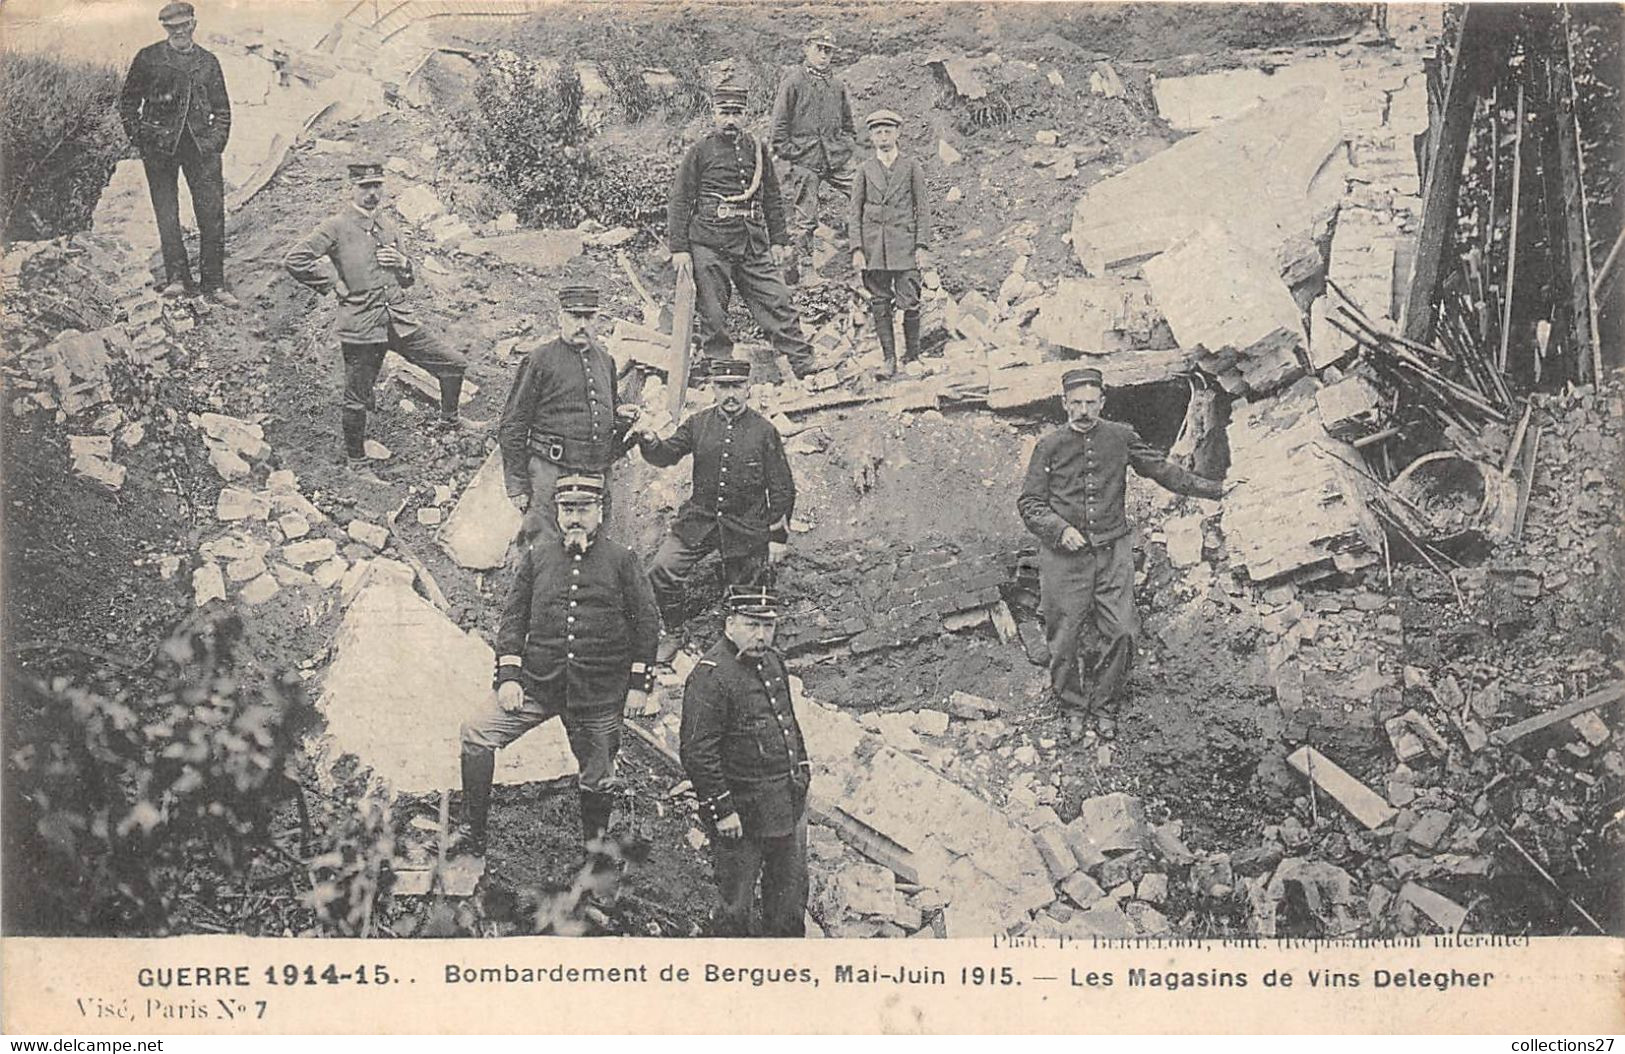 59-BERGUES- GUERRE15/15 BOMBARDEMENT DE BERGUES MAI-JUIN 1915 LES MAGASINS DE VIS DELEGHER - Bergues